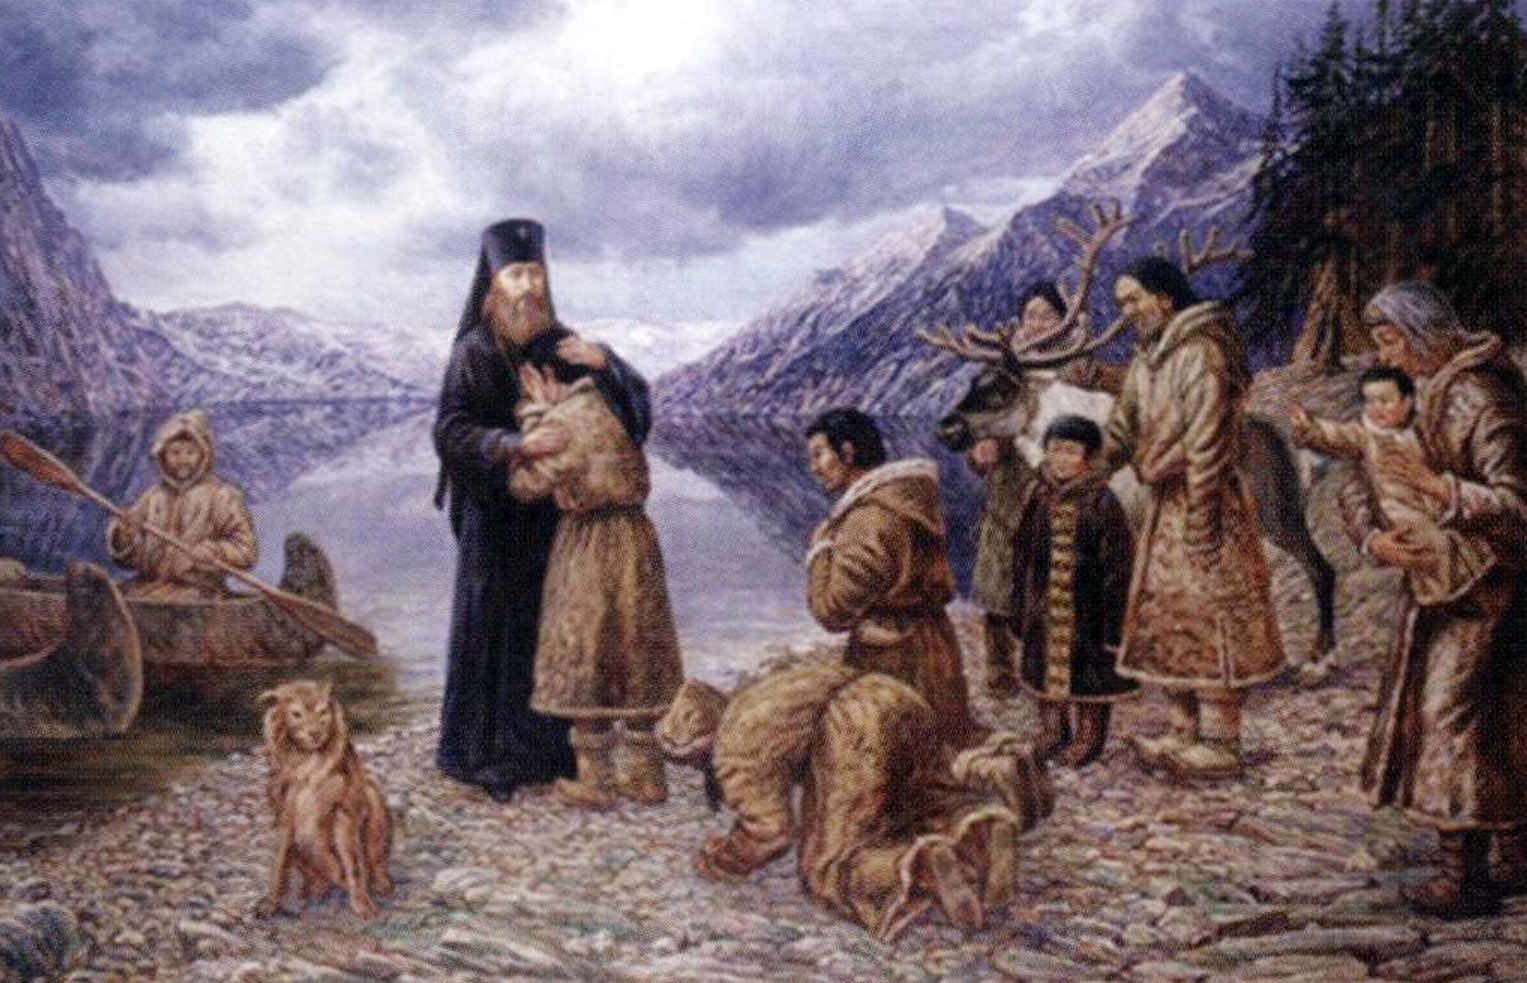 Эти славные индейцы православные. Много русских и православные храмы – местная жительница рассказала о жизни на Аляске